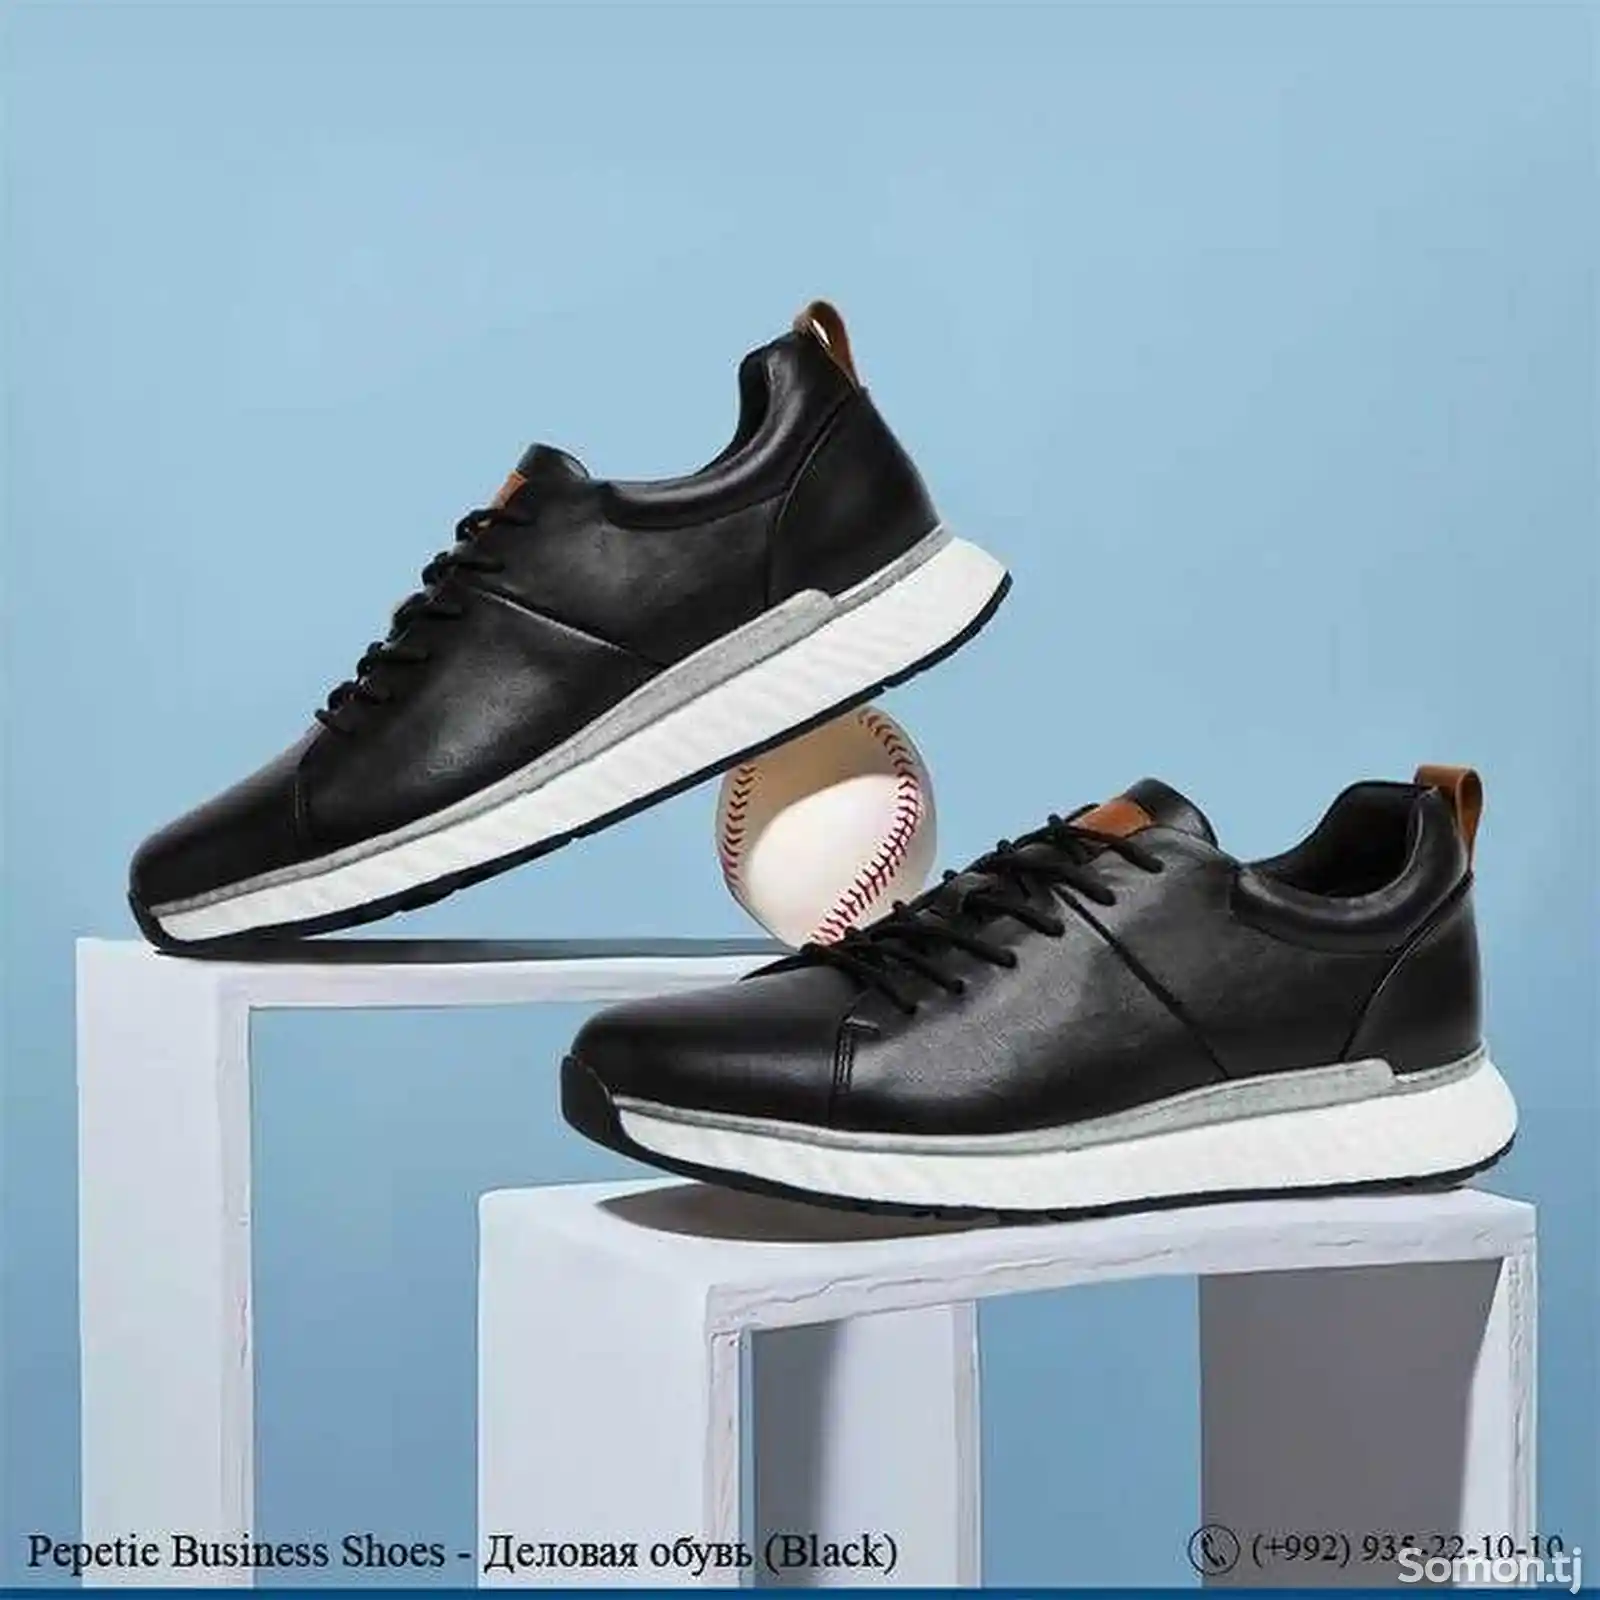 Деловая обувь Pepetie Business Shoes Black-2